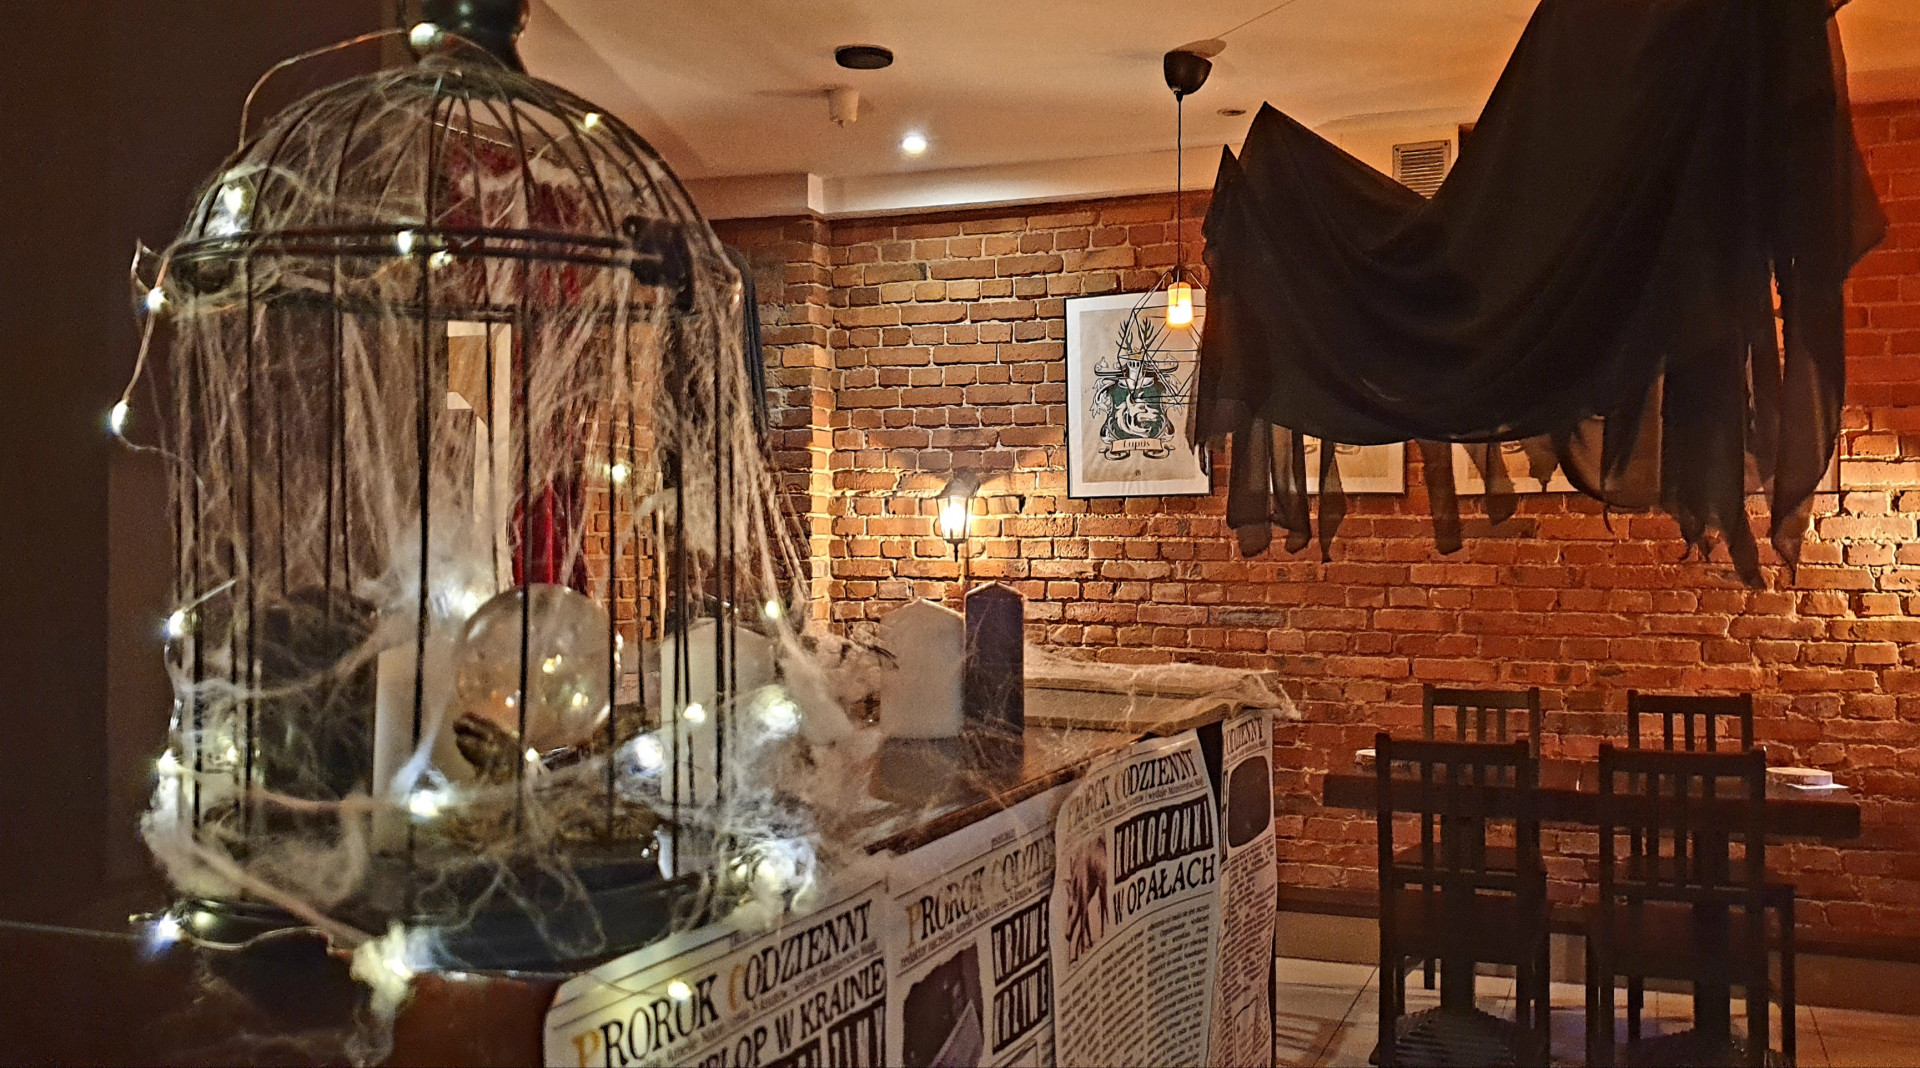 9 3/4 Cafe - kawiarnia stylizowana na świat Harry'ego Pottera w Katowicach.